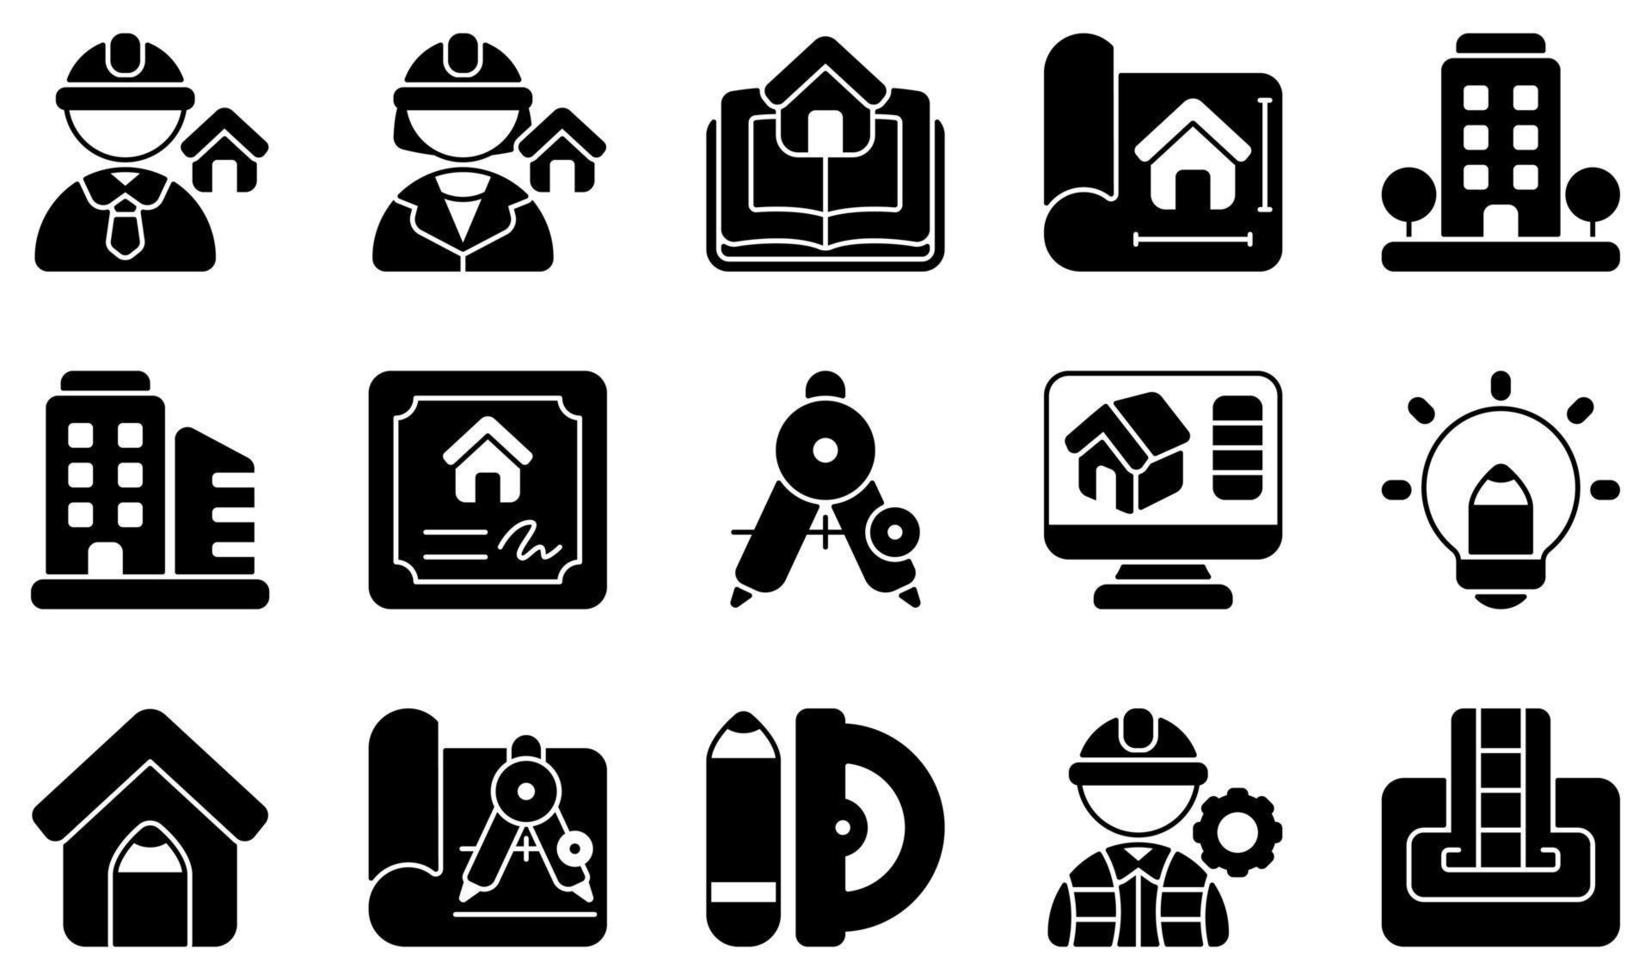 set di icone vettoriali relative all'architettura. contiene icone come architetto, architettura, progetto, edificio, certificato, design creativo e altro ancora.